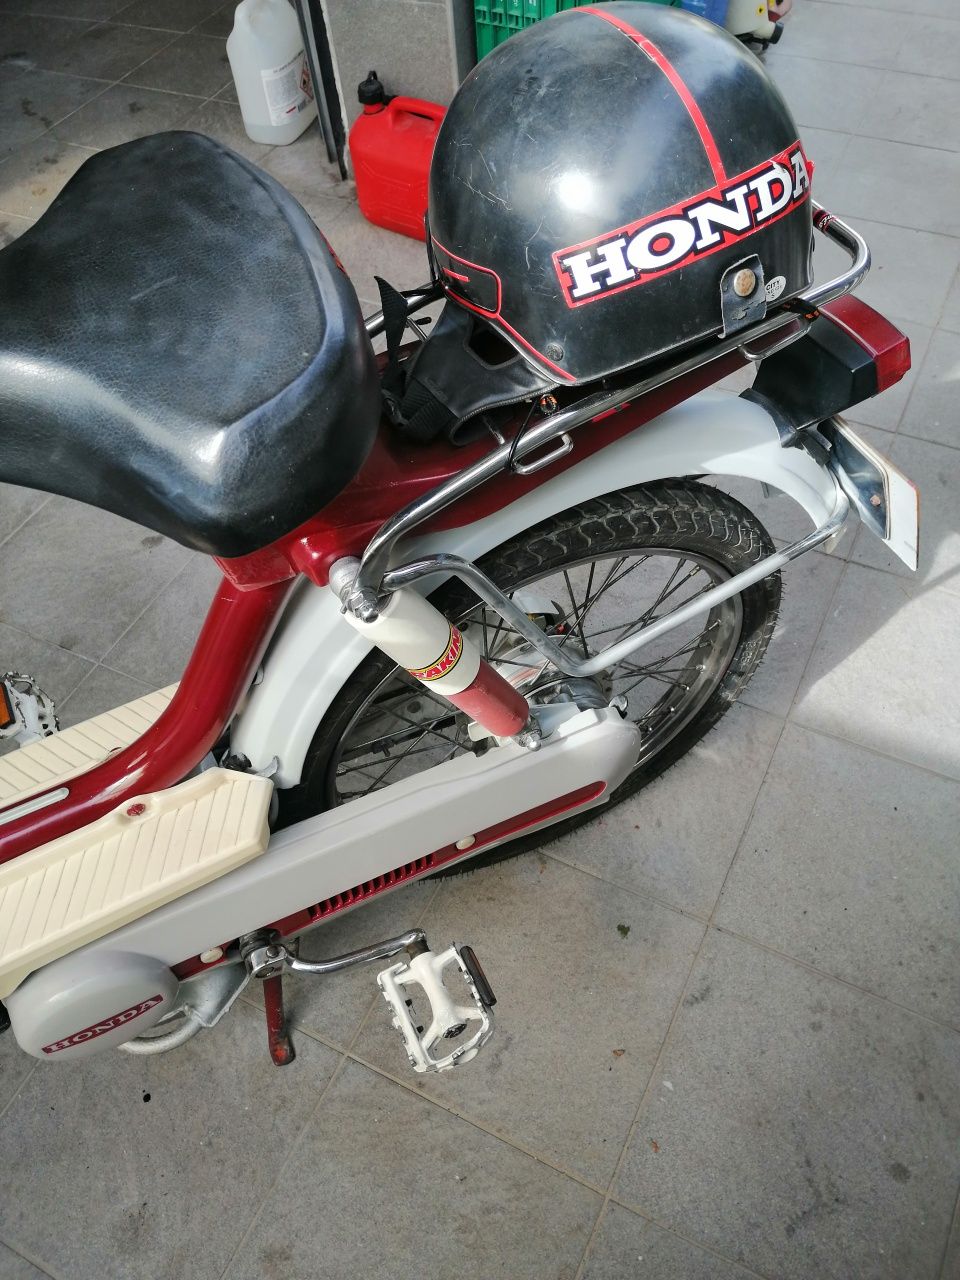 Honda Camino 49cc.Esta em estado nova e a andar sem qualquer problema.